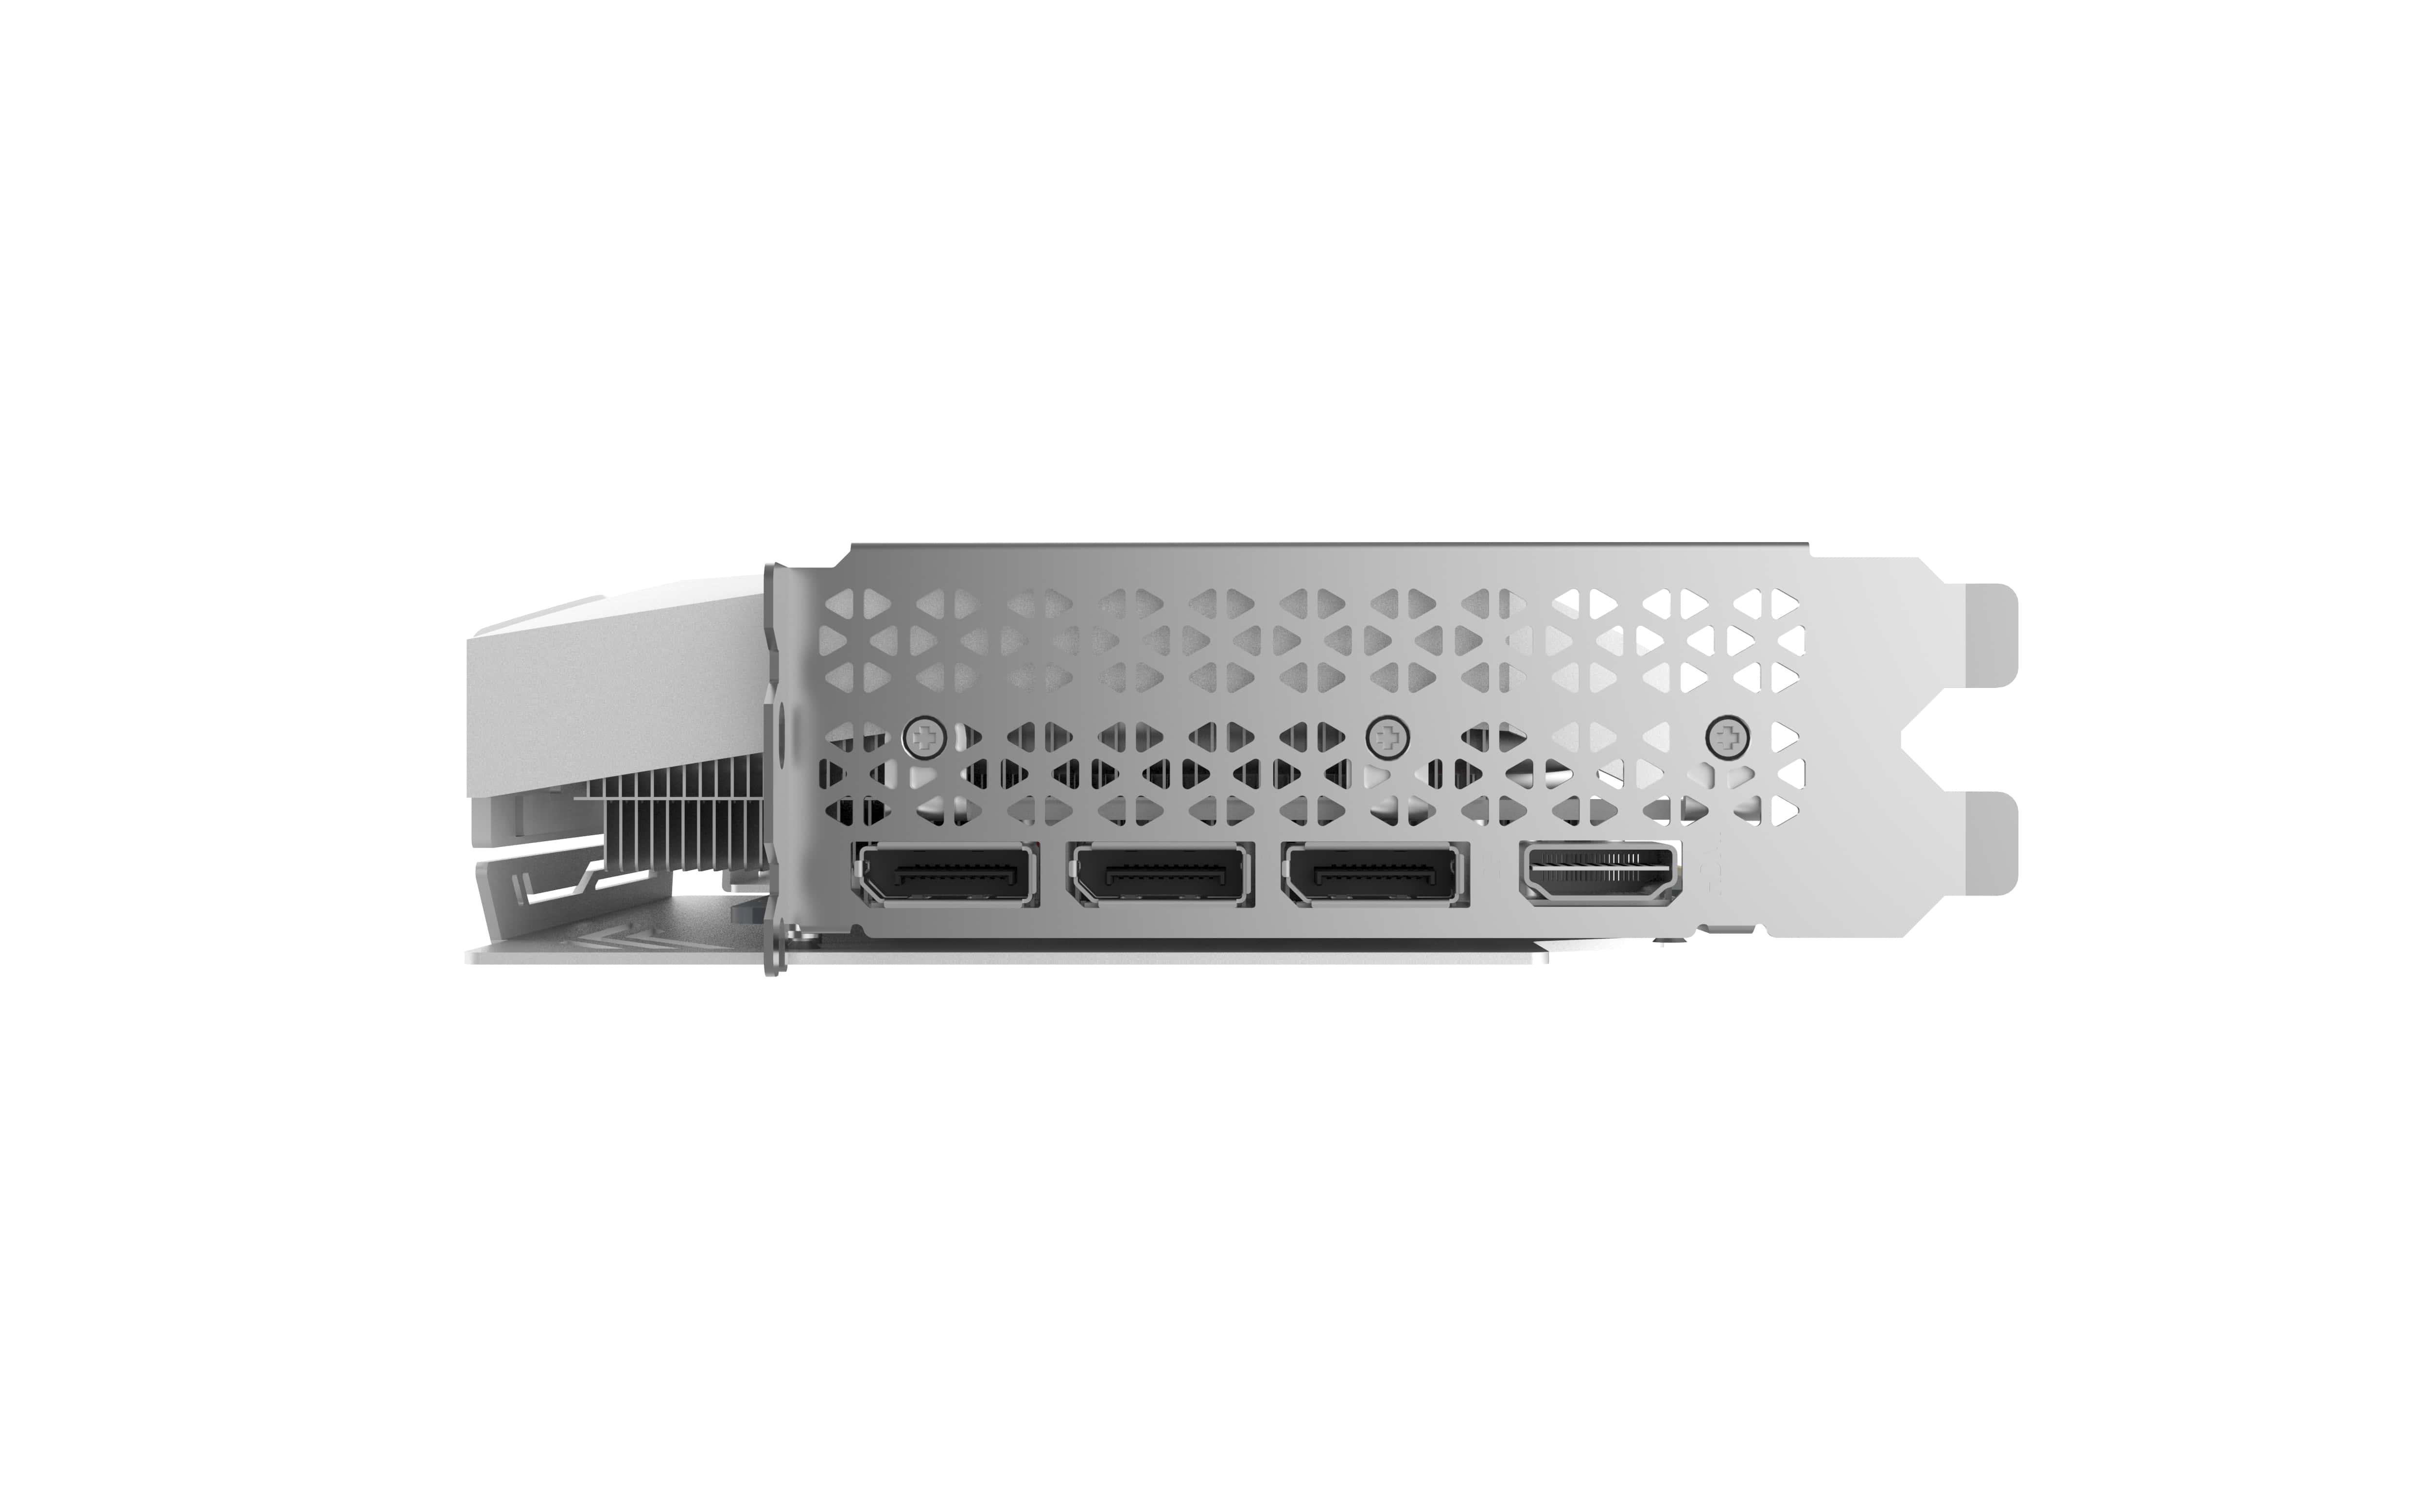 GeForce 3070 OC EDGE (NVIDIA, WHITE Grafikkarte) EDITION ZOTAC (ZT-A30700J-10P) 8GB TWIN RTX™